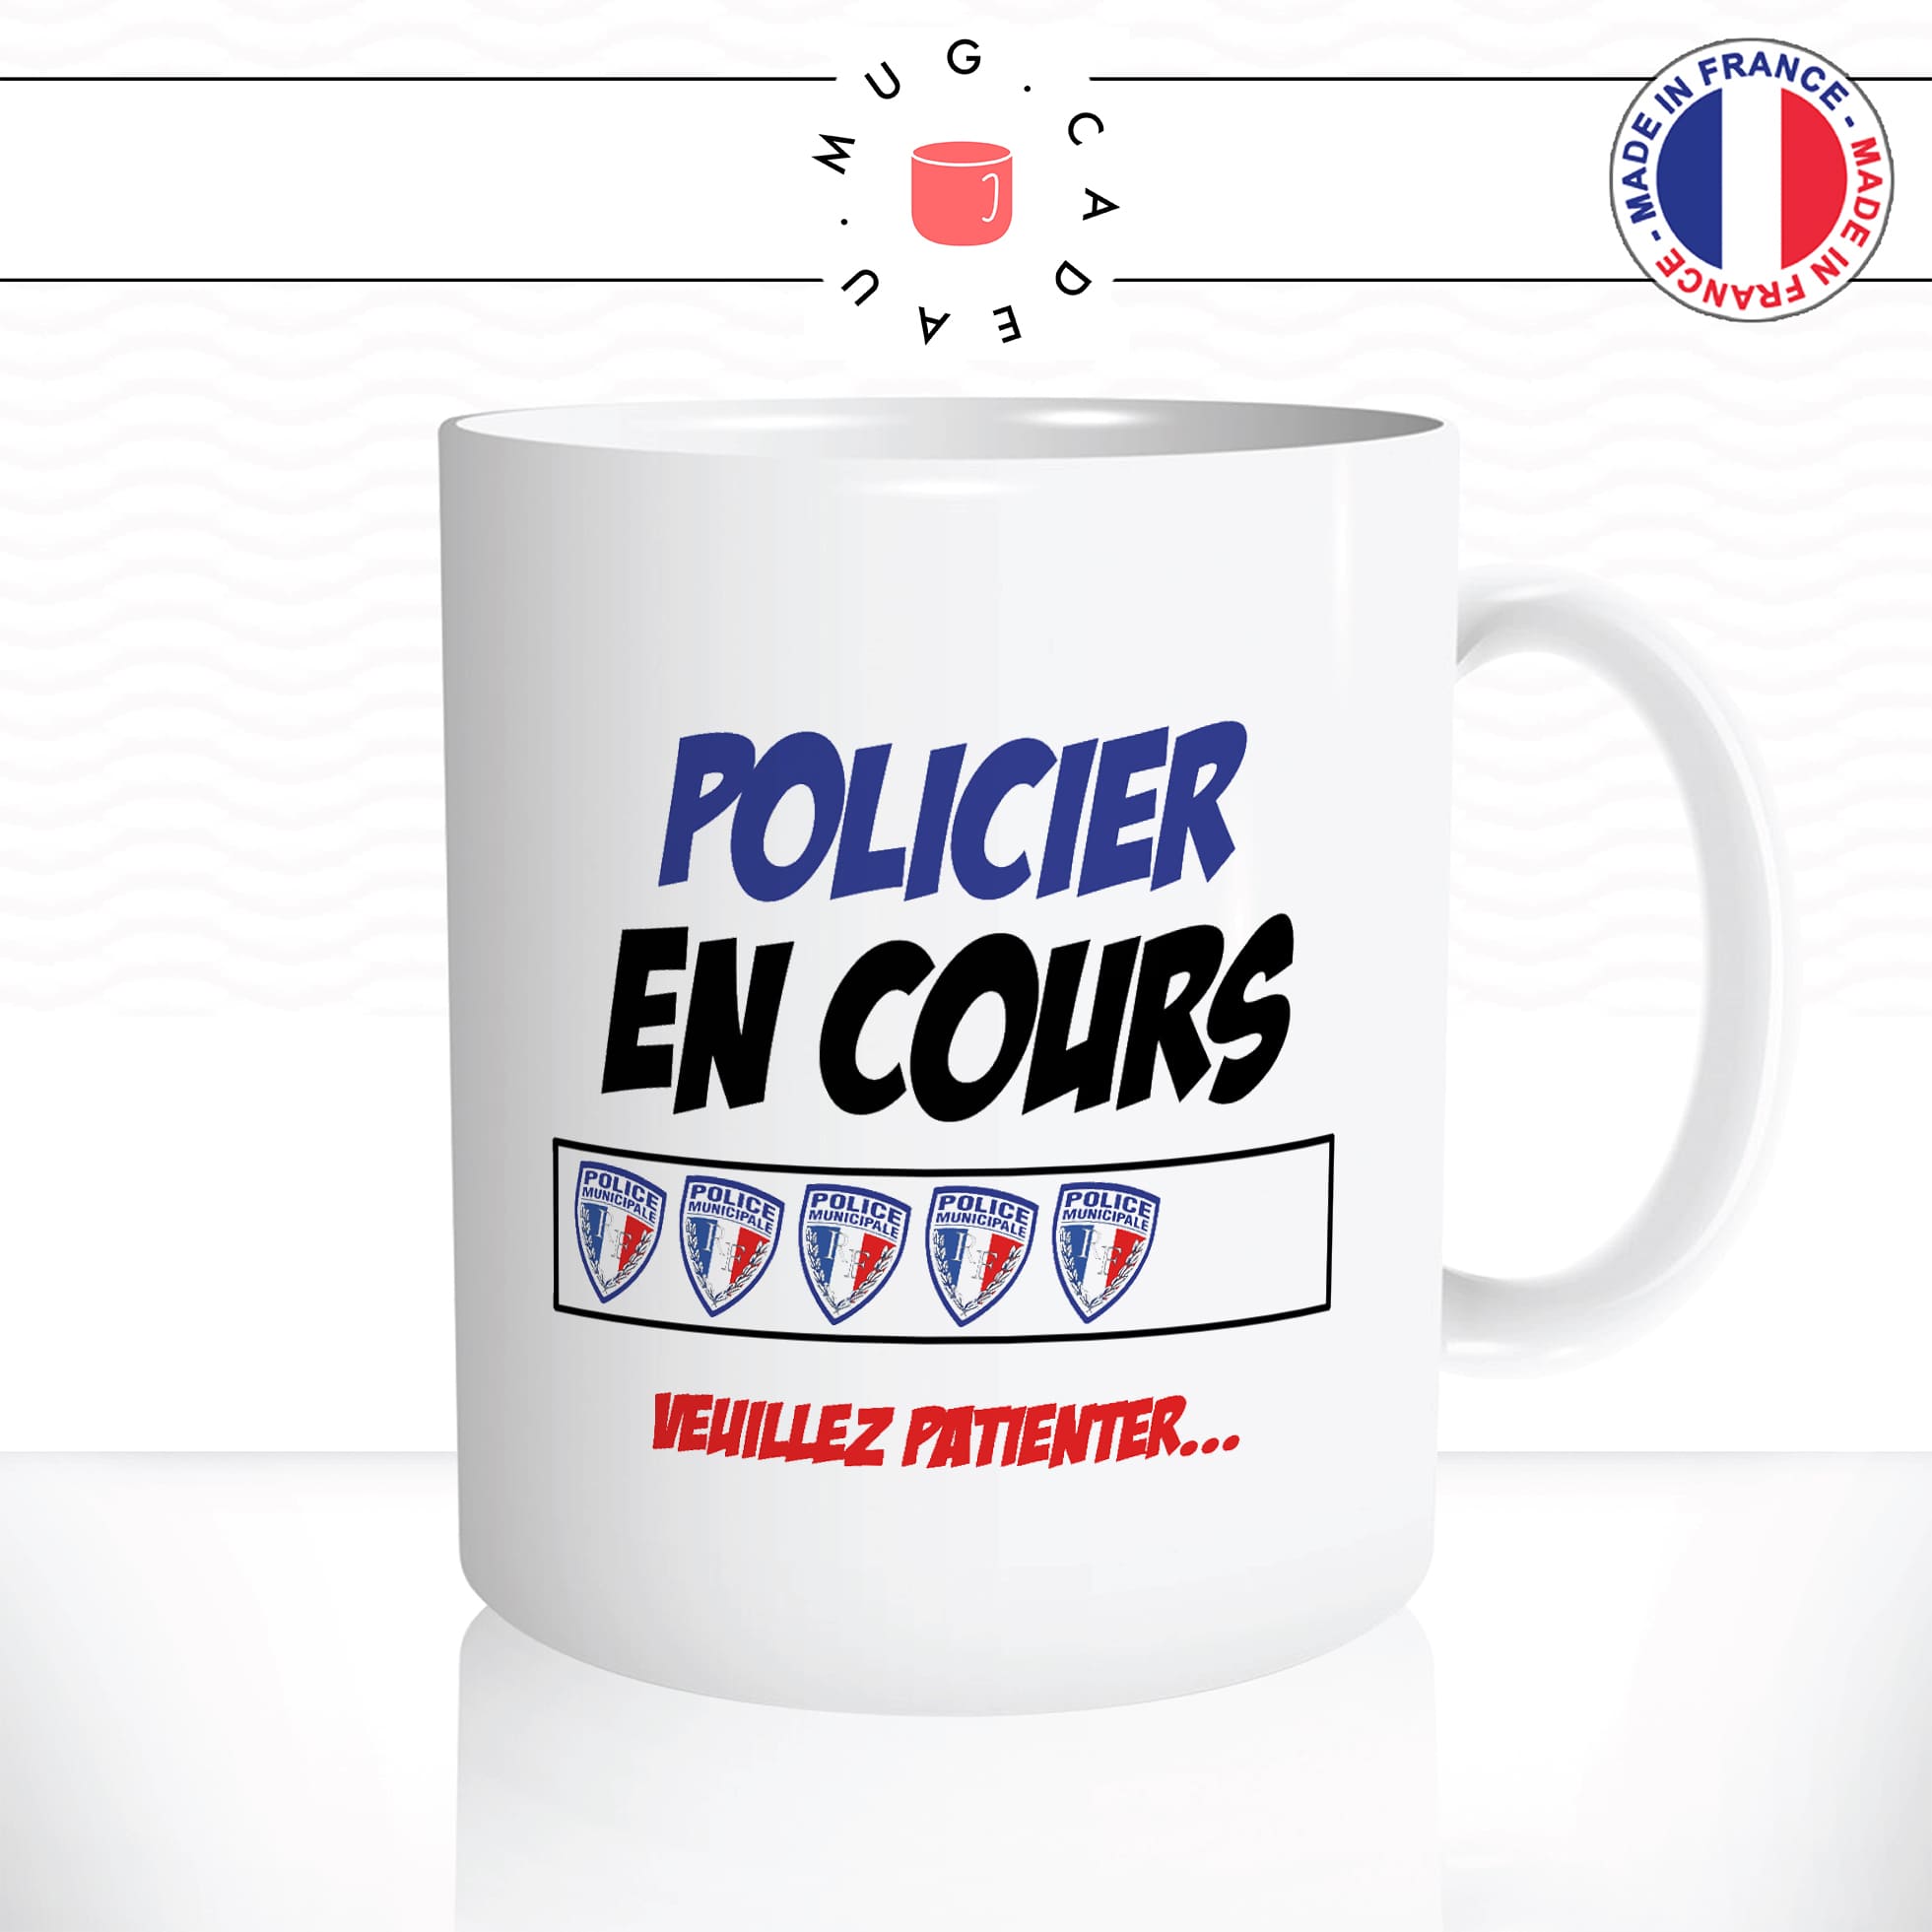 mug-tasse-blanc-unique-policier-en-cours-police-ecole-chargement-flic-homme-femme-humour-fun-cool-idée-cadeau-original-personnalisé2